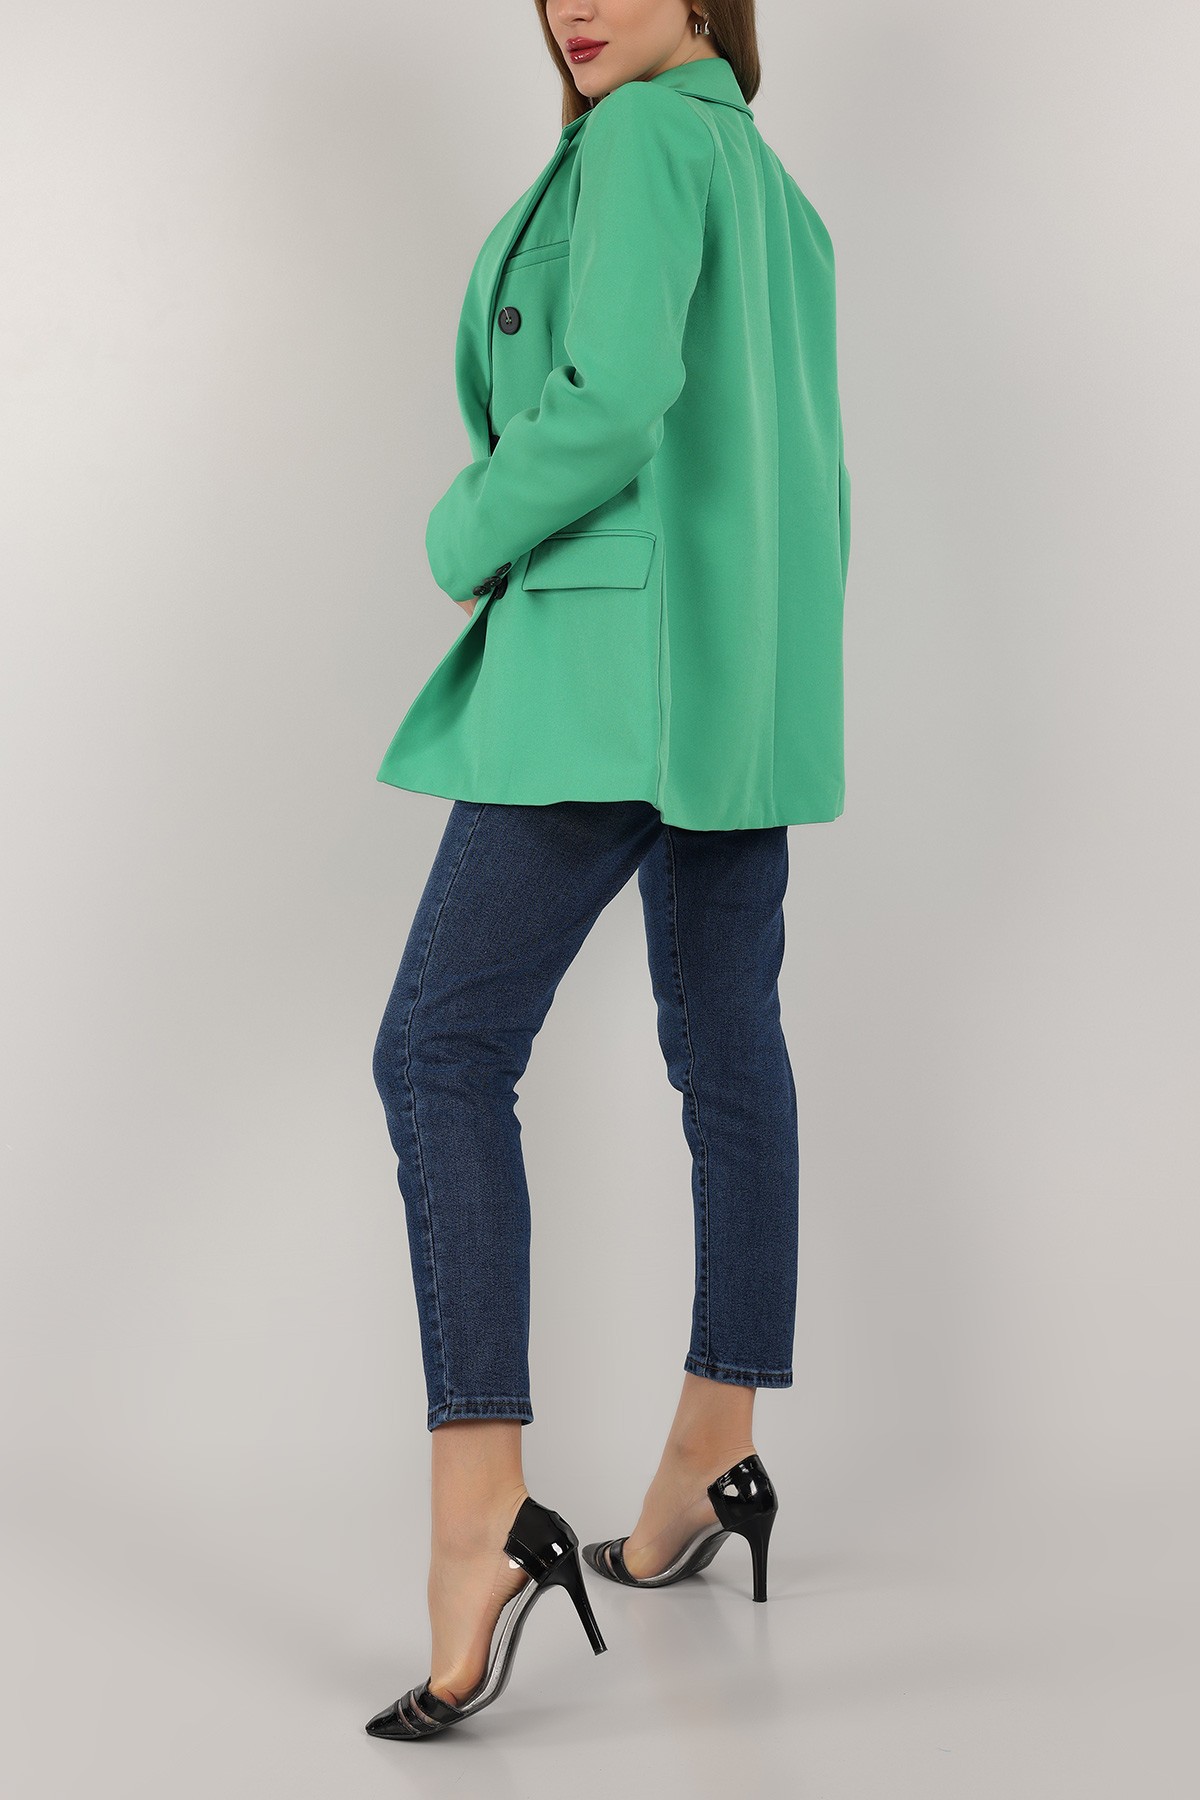 Yeşil Astarlı Bayan Kruvaze Ceket 158160